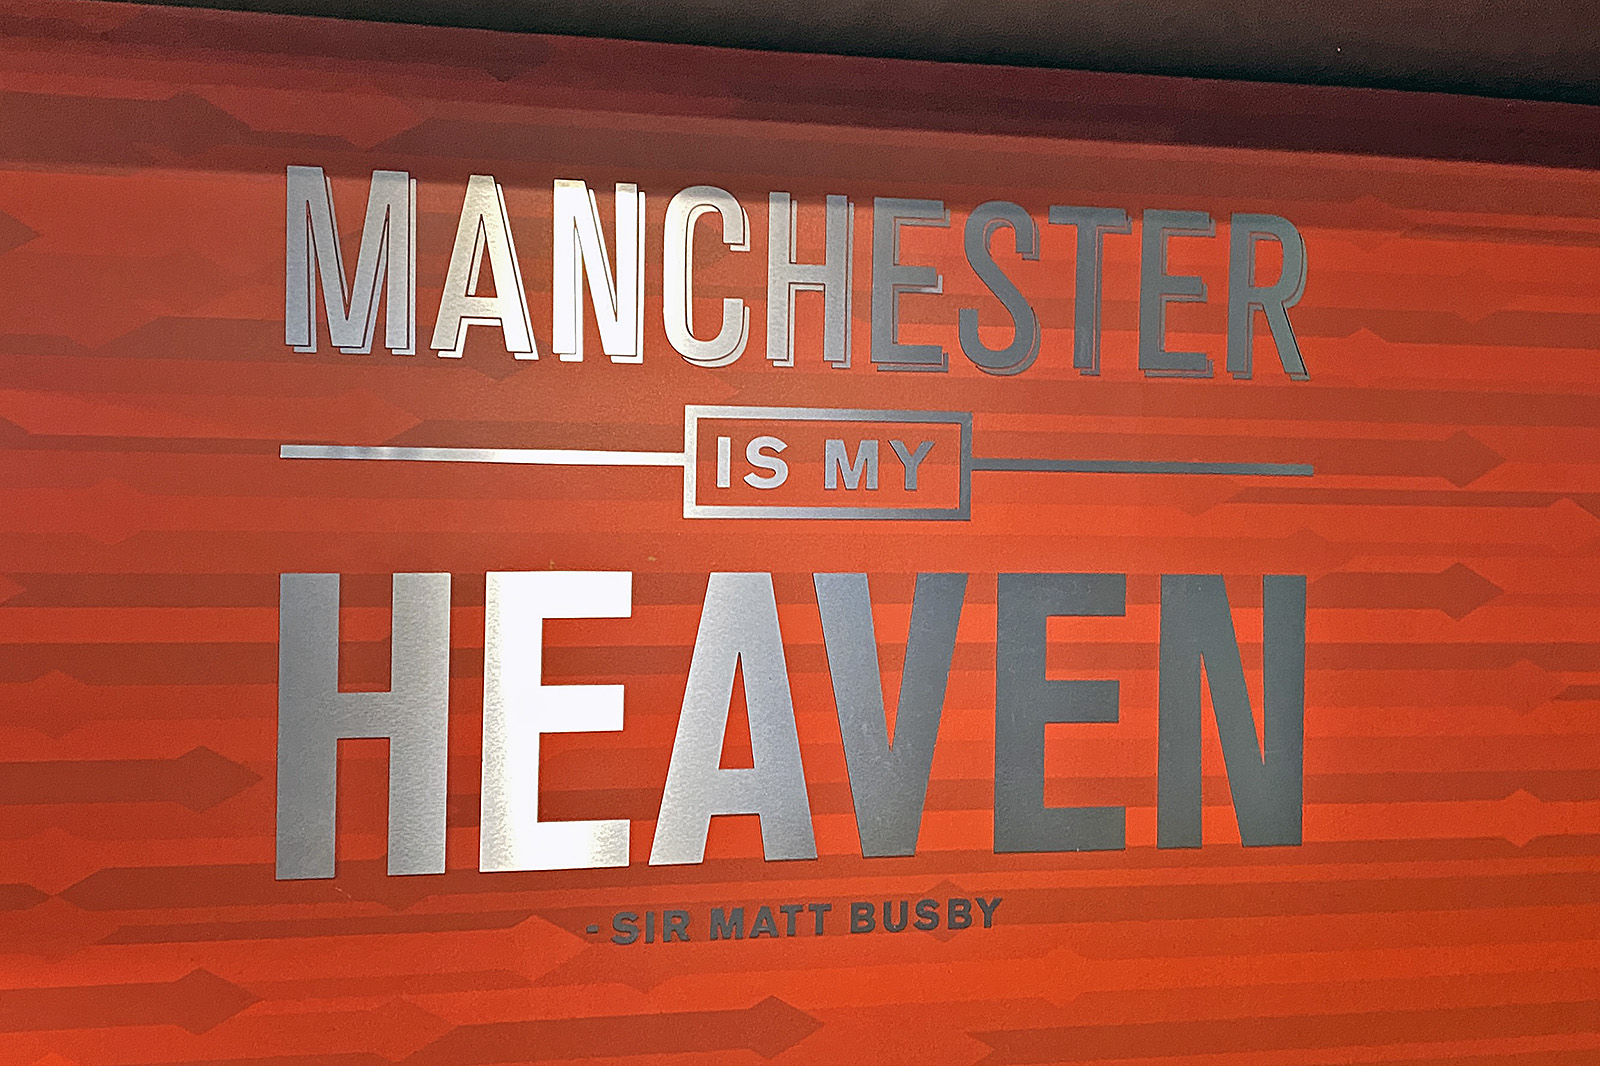 Manchester is my heaven - Matt Busby